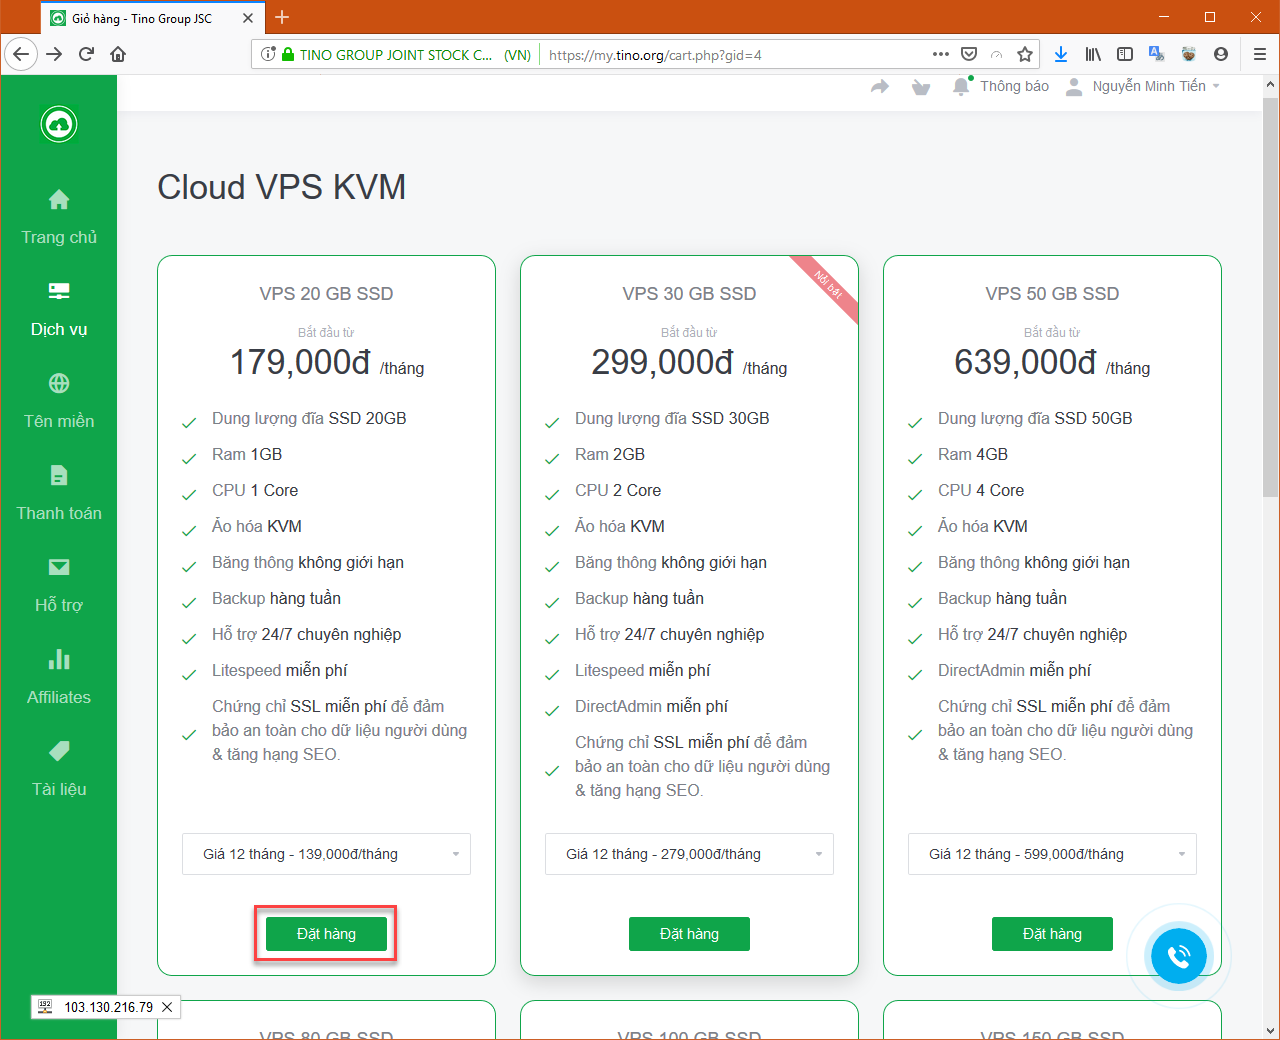 [Client] Hướng dẫn đăng ký dịch vụ Cloud VPS 13